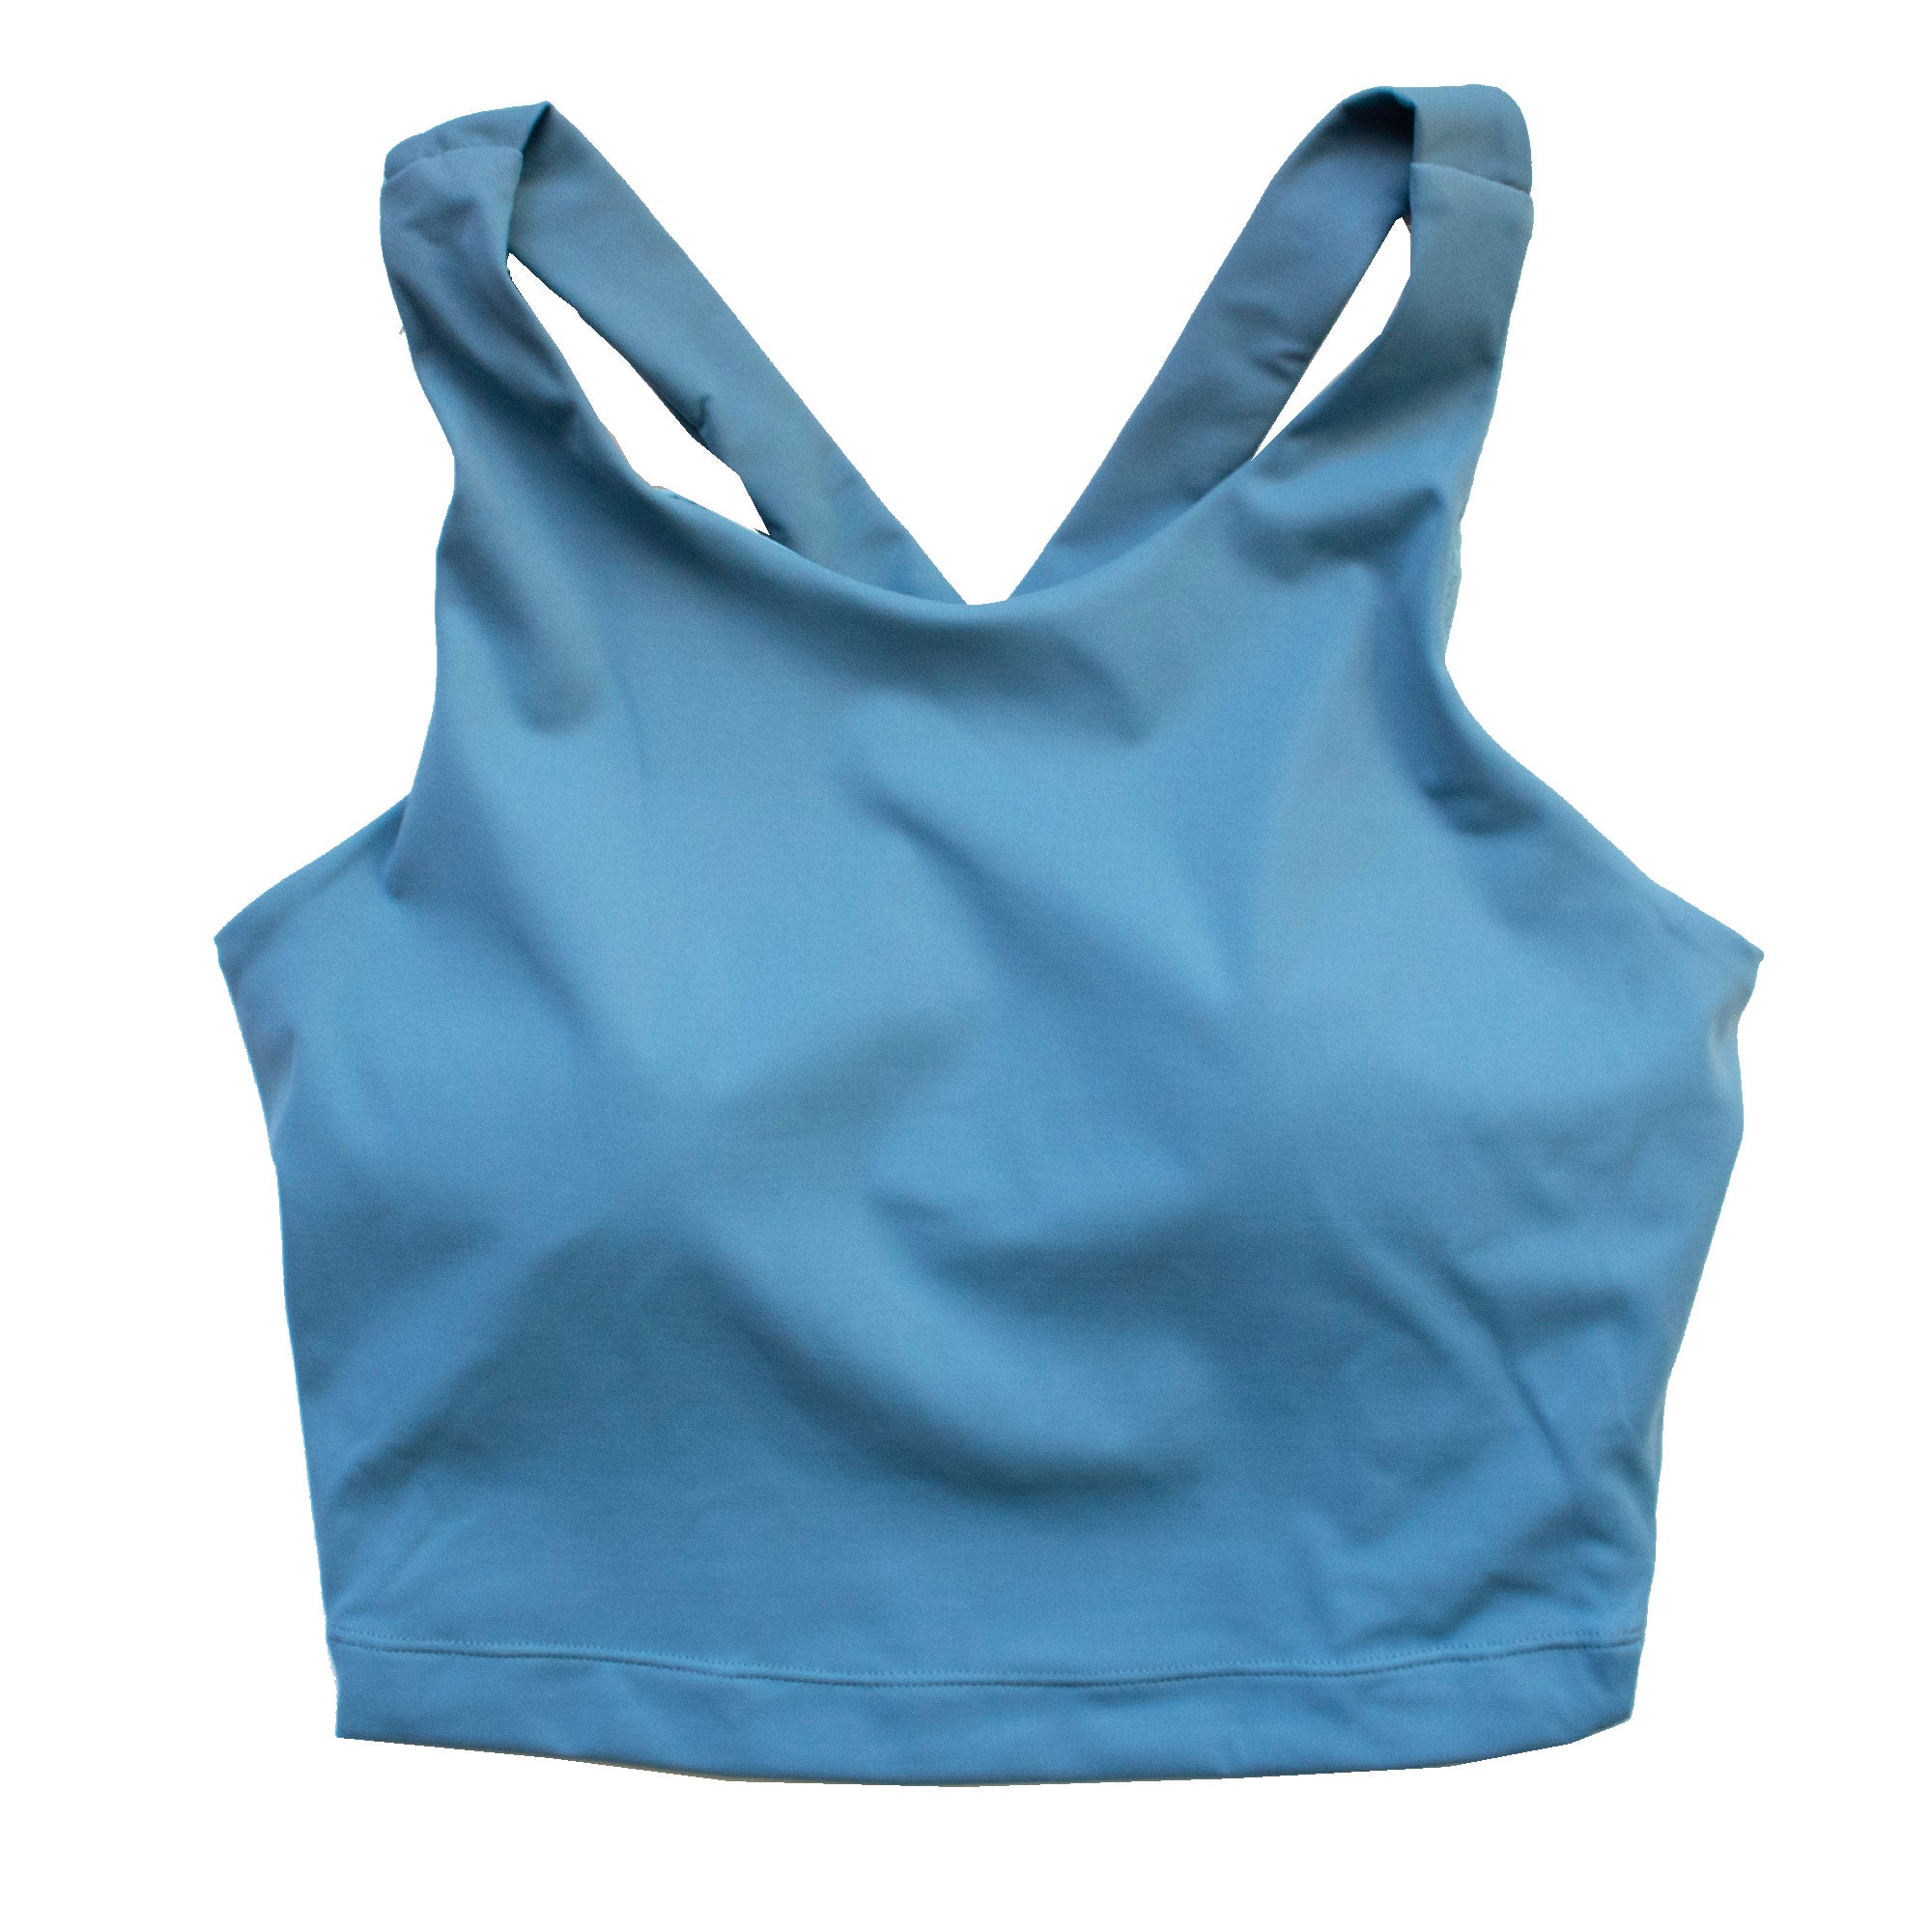 RUNNER ISLAND Womens Light Blue Asymmetrical Sports Bra Top with